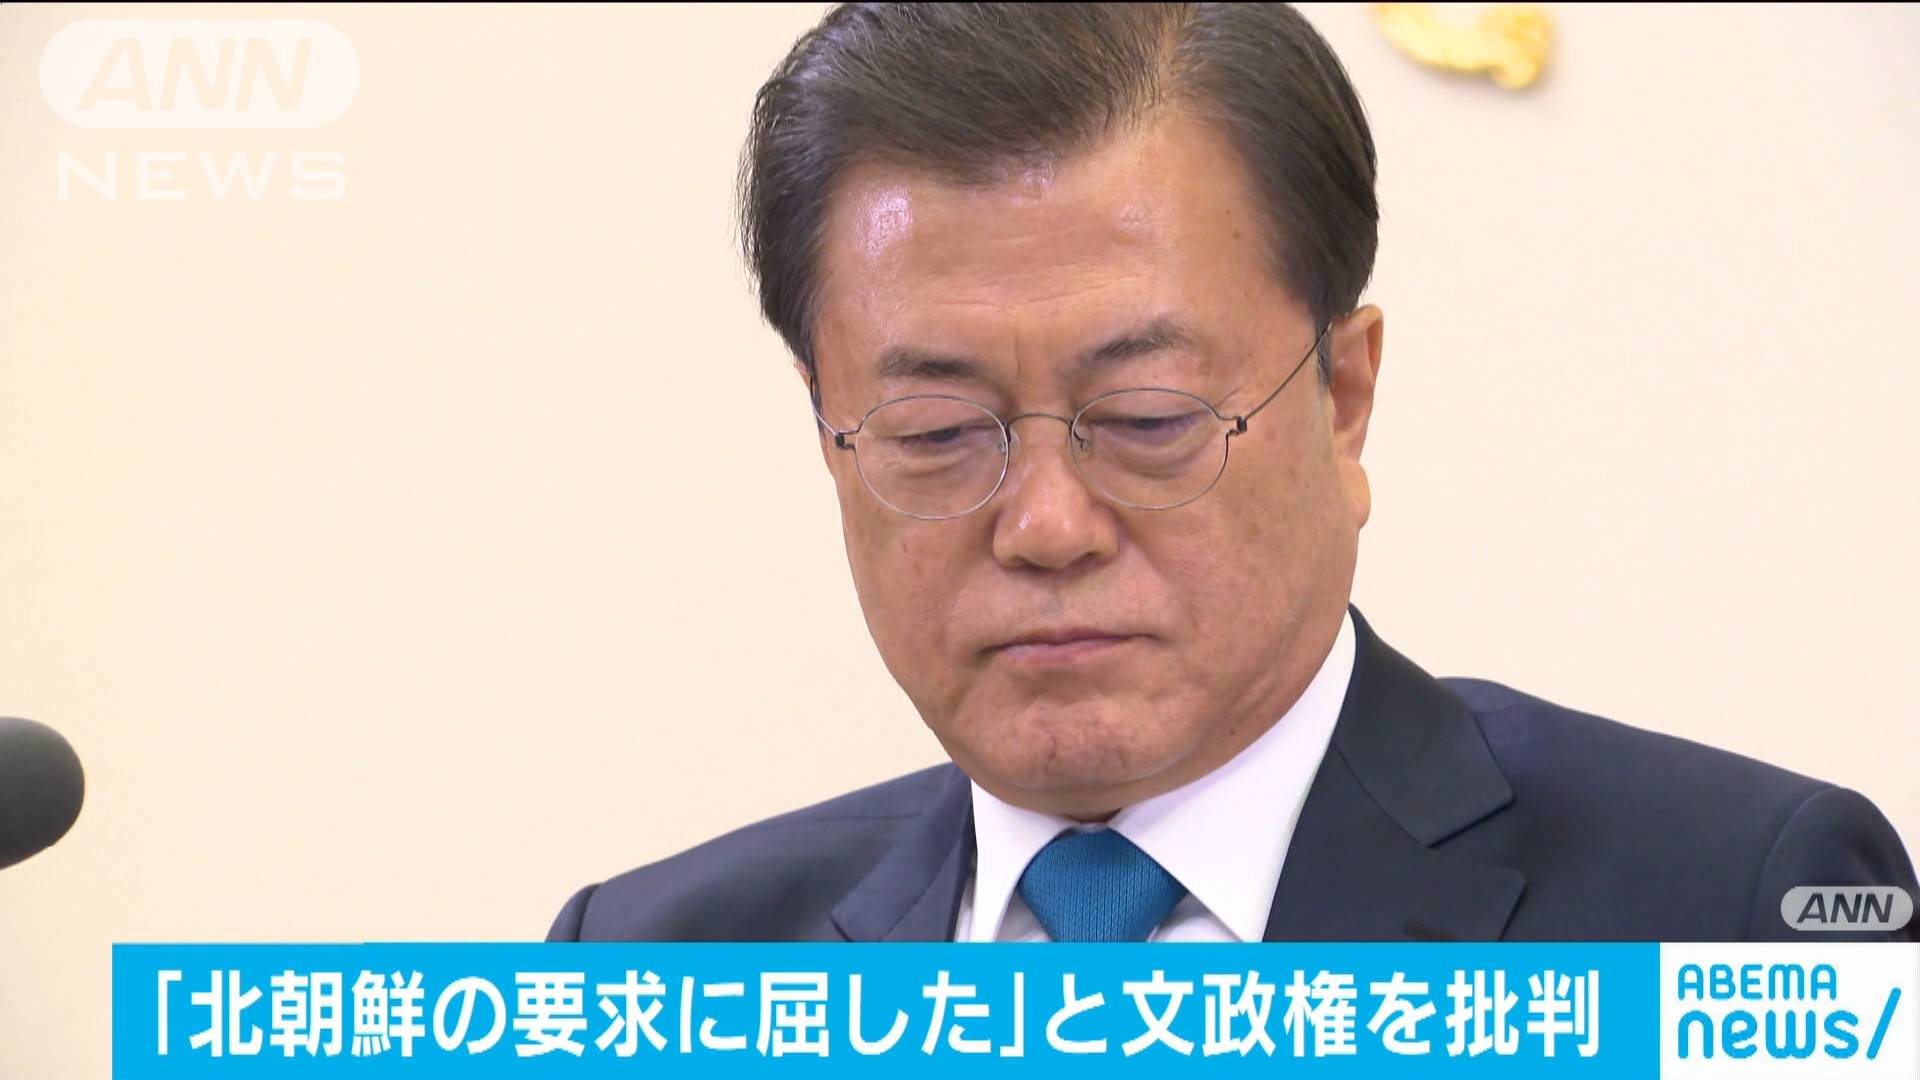 前国連事務総長が韓国批判 北朝鮮の要求に屈した テレ朝news テレビ朝日のニュースサイト